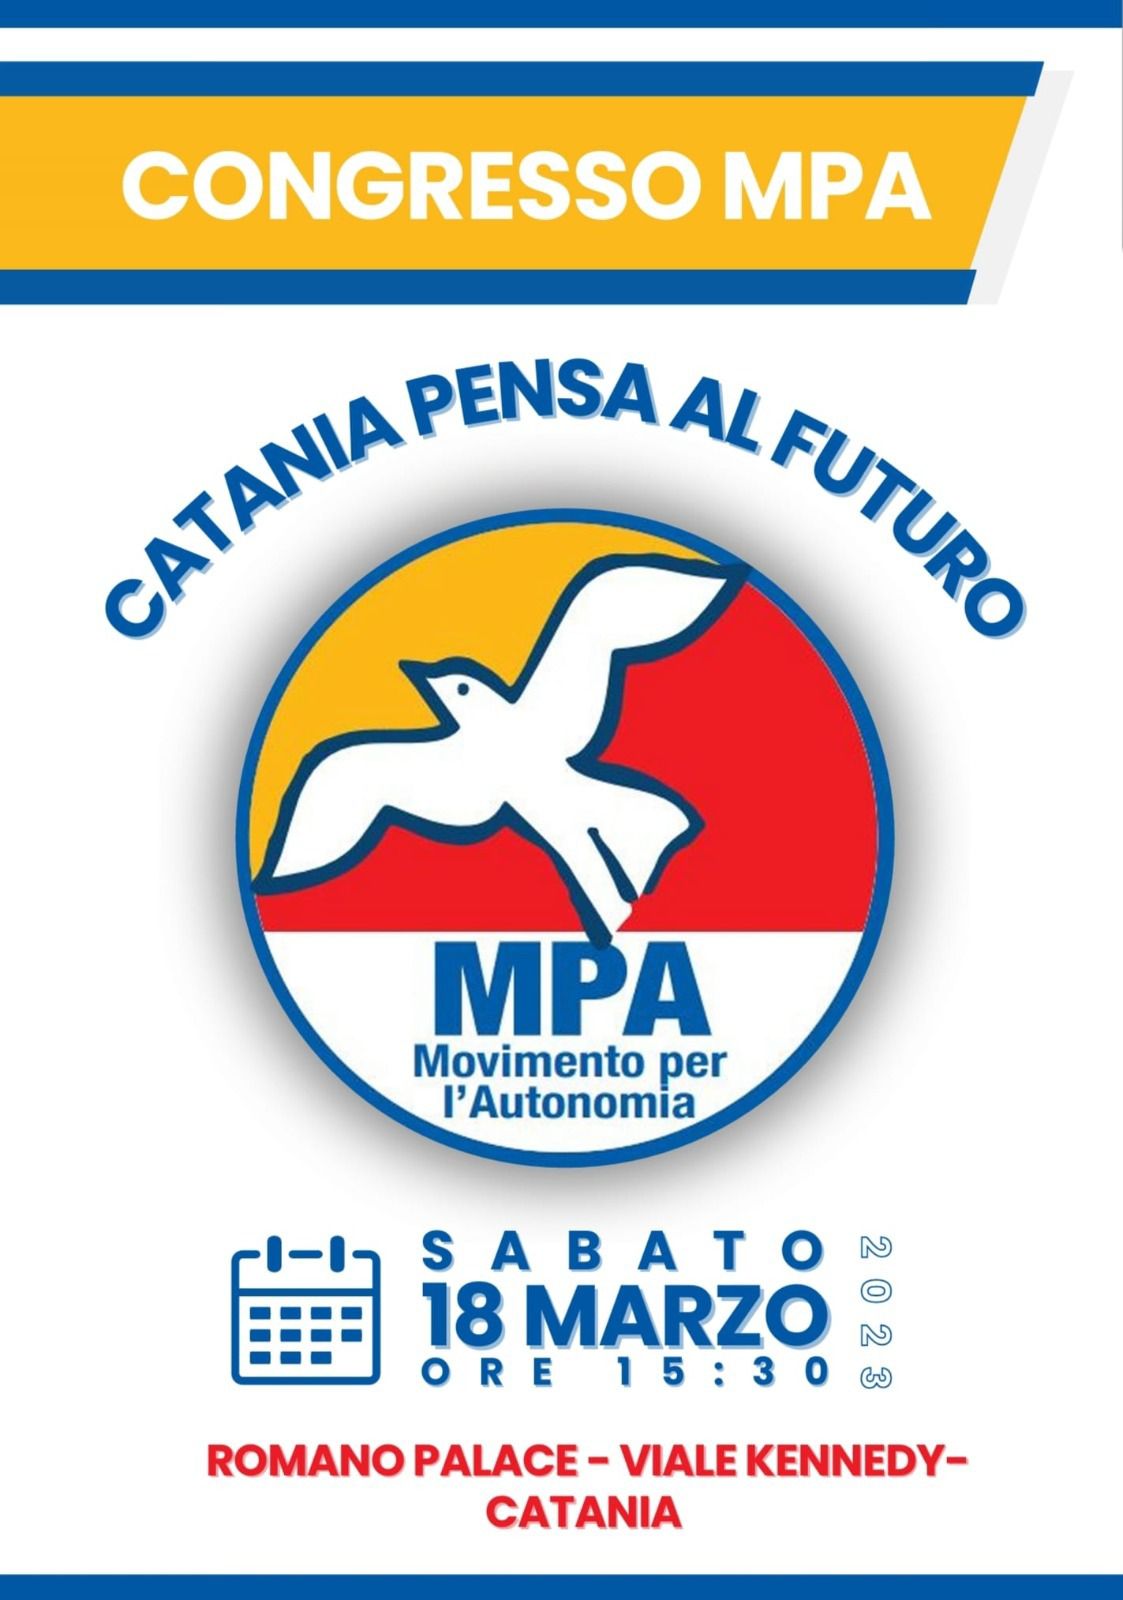 Catania pensa al futuro: al Romano Palace congresso dell’MPA